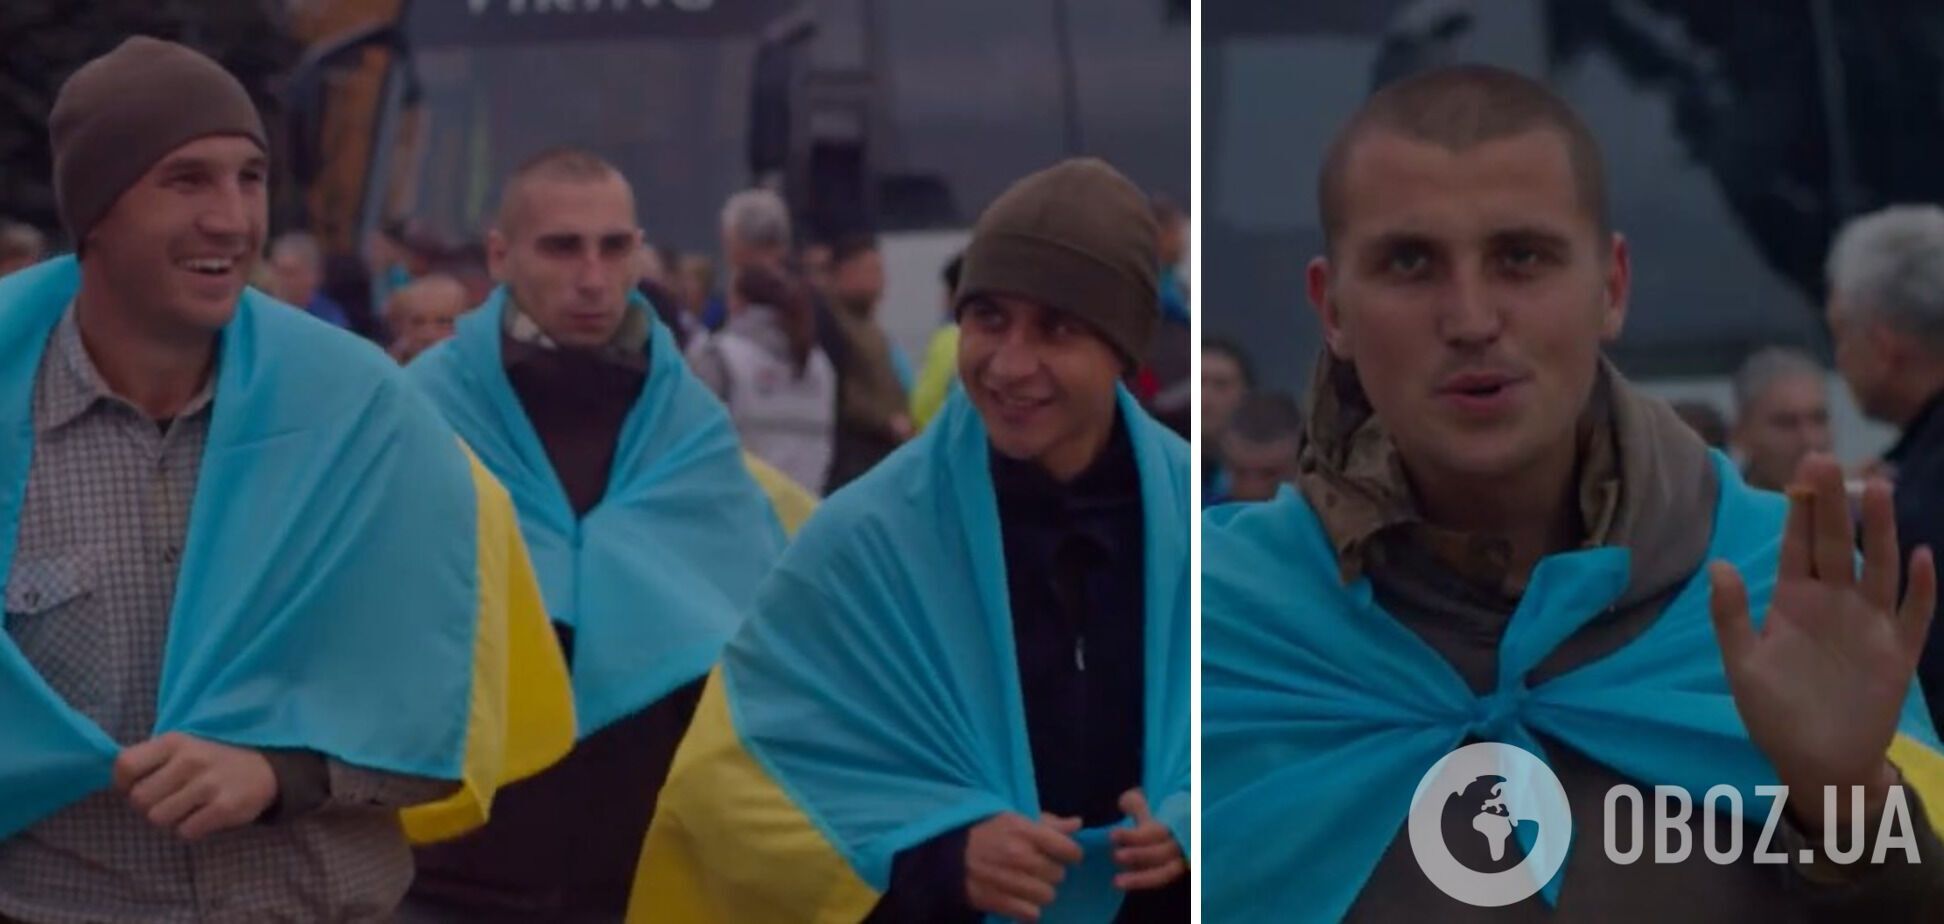 ''Солнце, я дома'': в сети показали трогательные кадры возвращения из плена украинских пограничников. Видео